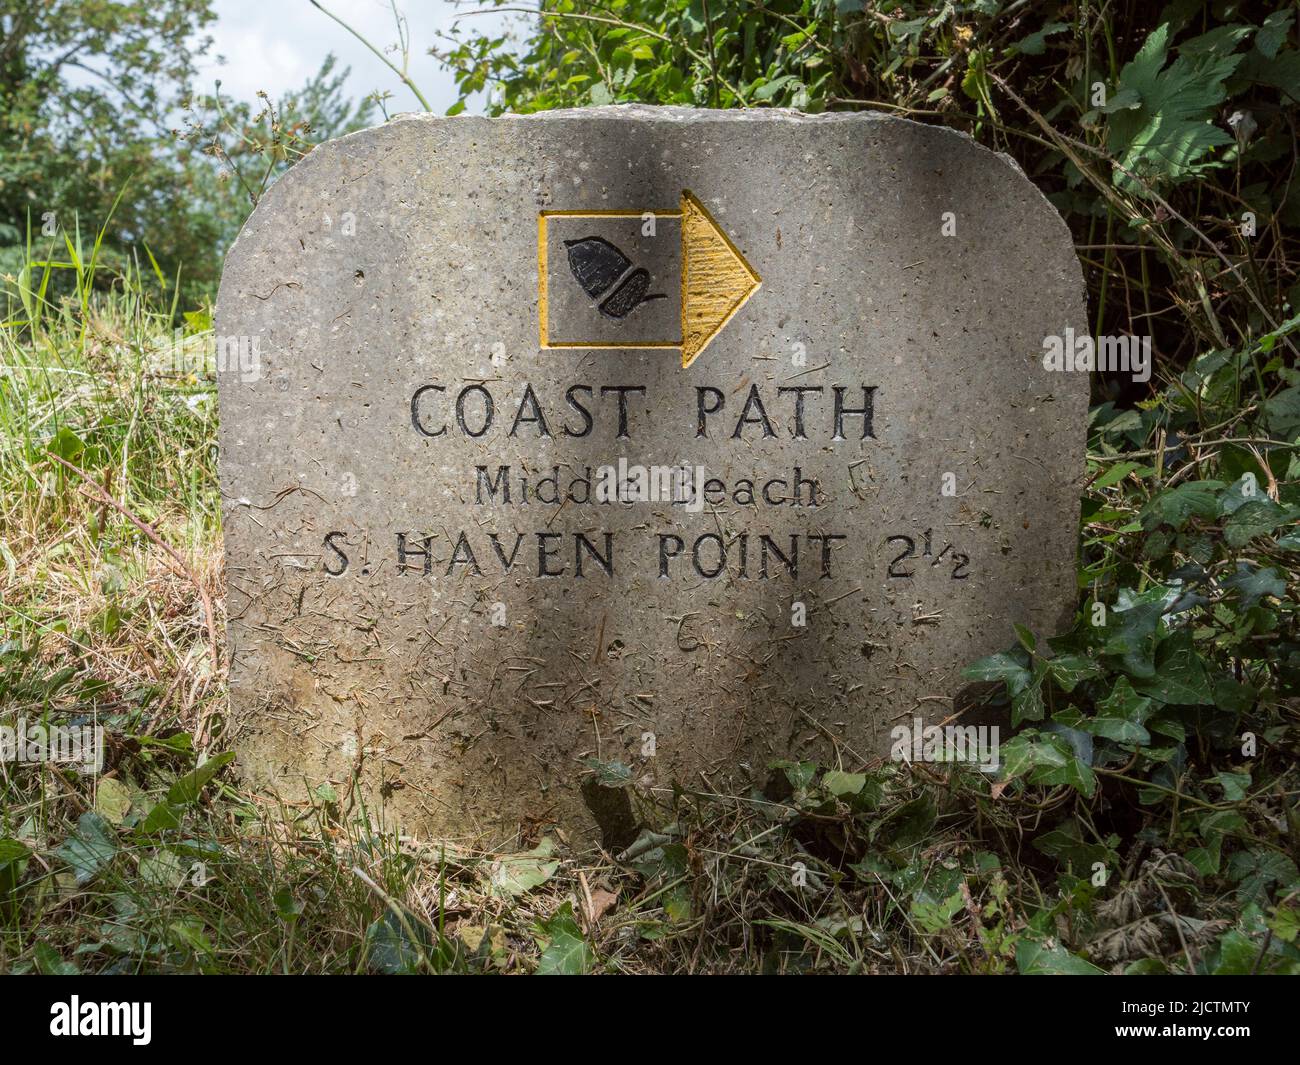 Un marcador de ruta costera para Middle Beach y South Haven Point en Dorset, Reino Unido. Foto de stock